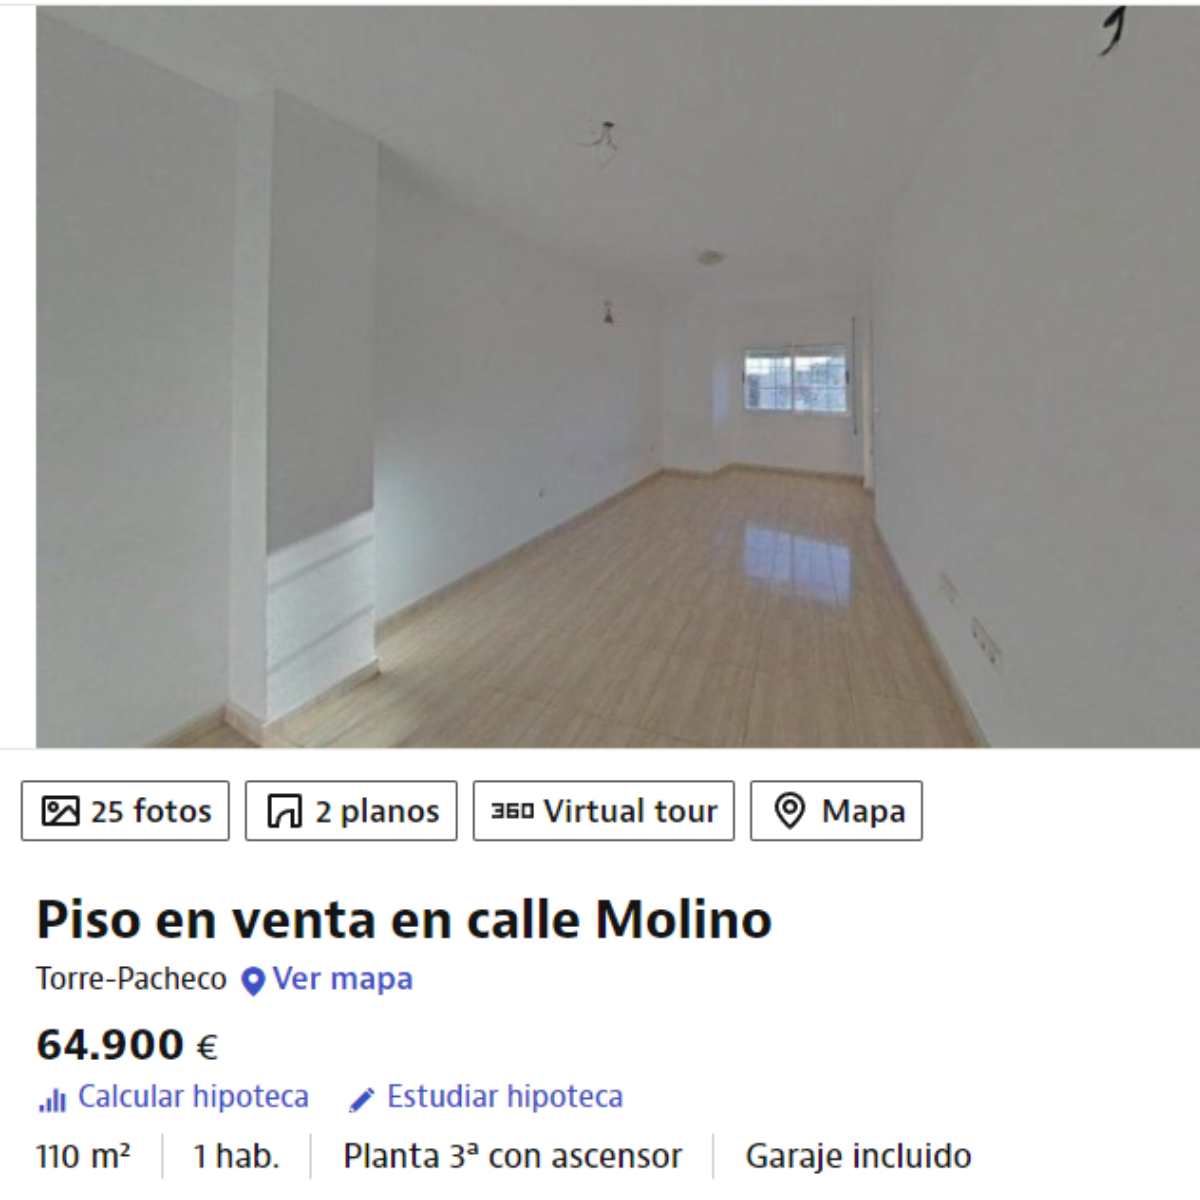 Piso a la venta en Torre-Pacheco (Murcia) por un precio de 64.9000 euros 